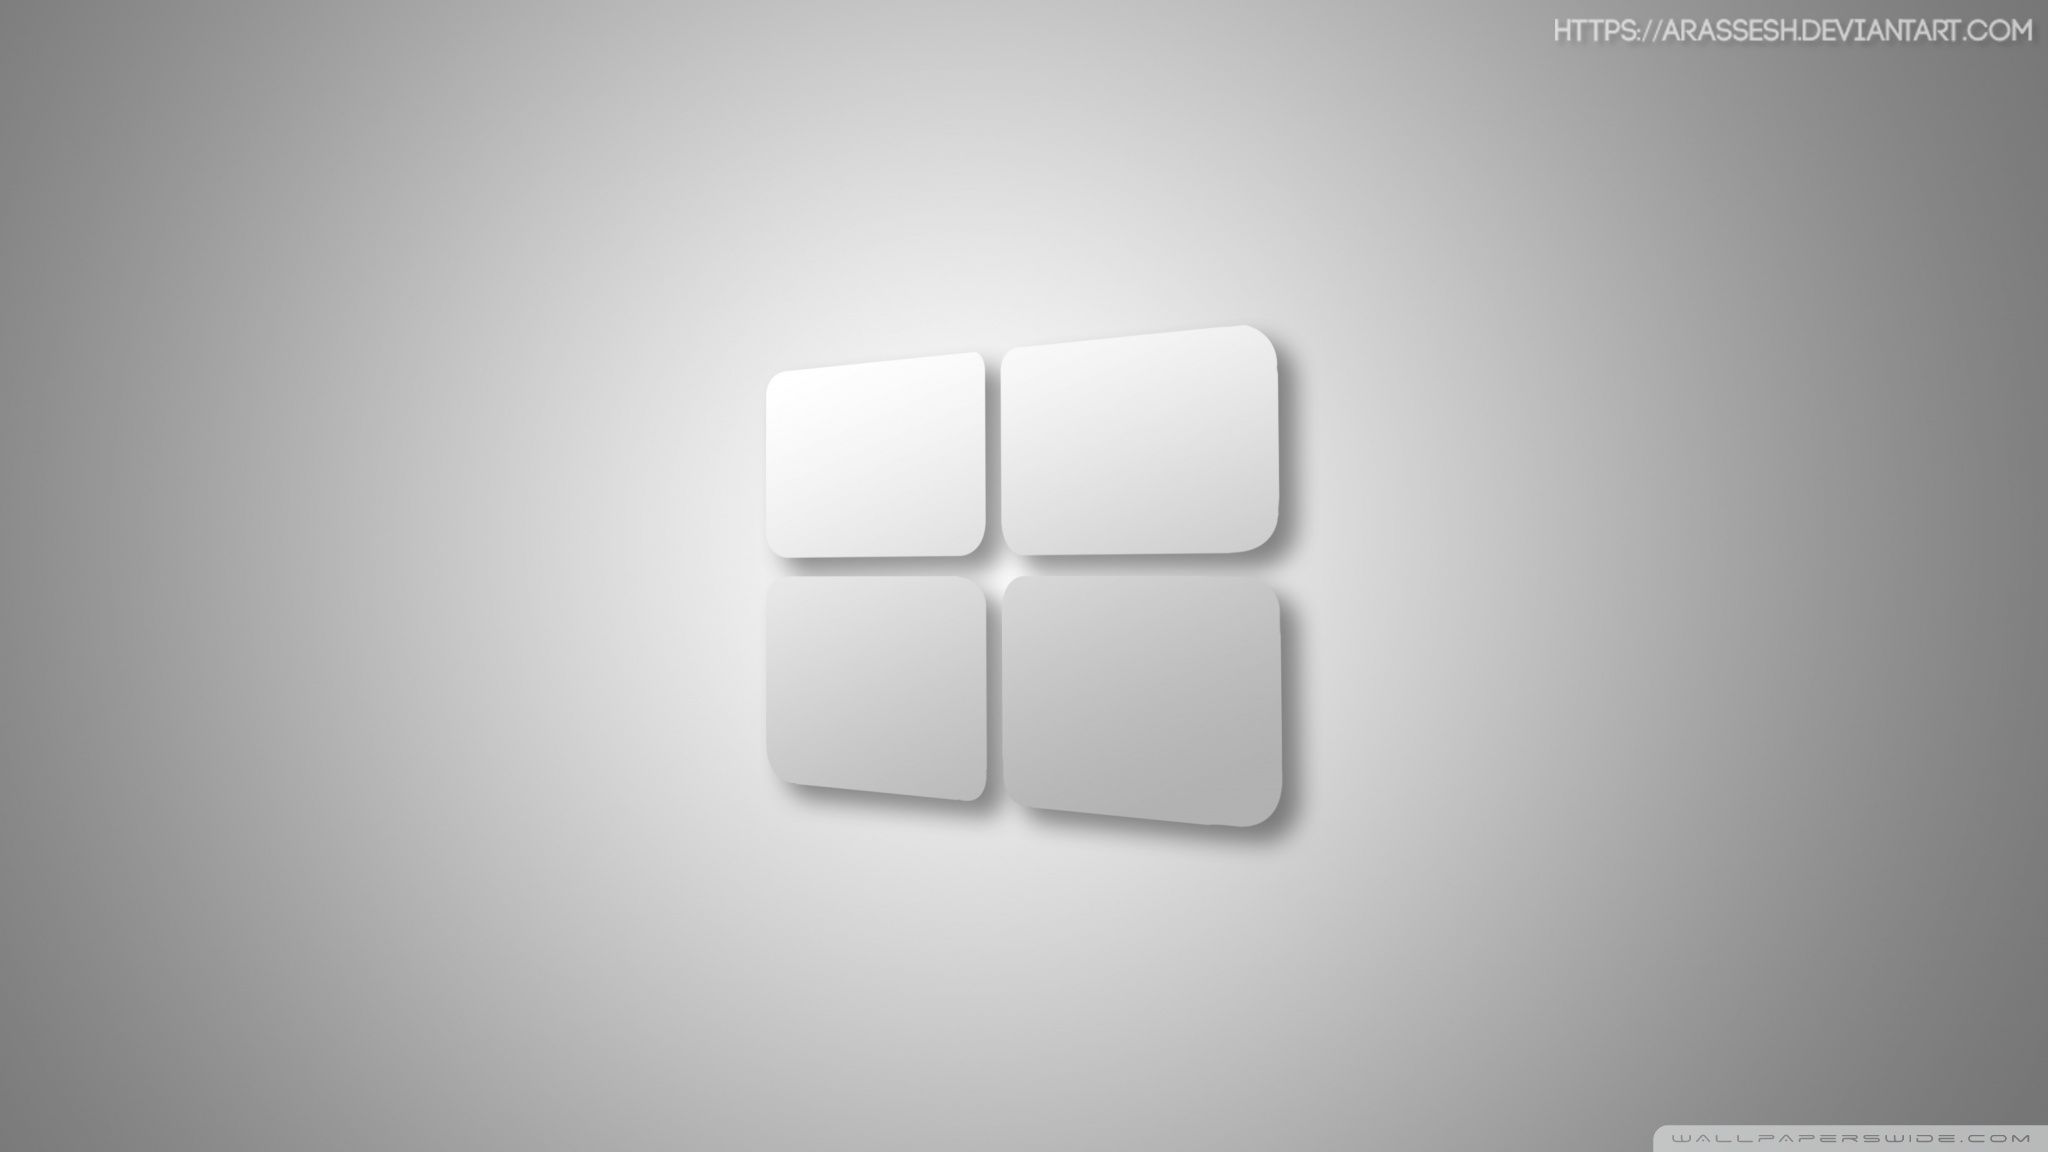 windows 10 white Ultra HD Desktop Background Wallpaper for 4K UHD TV